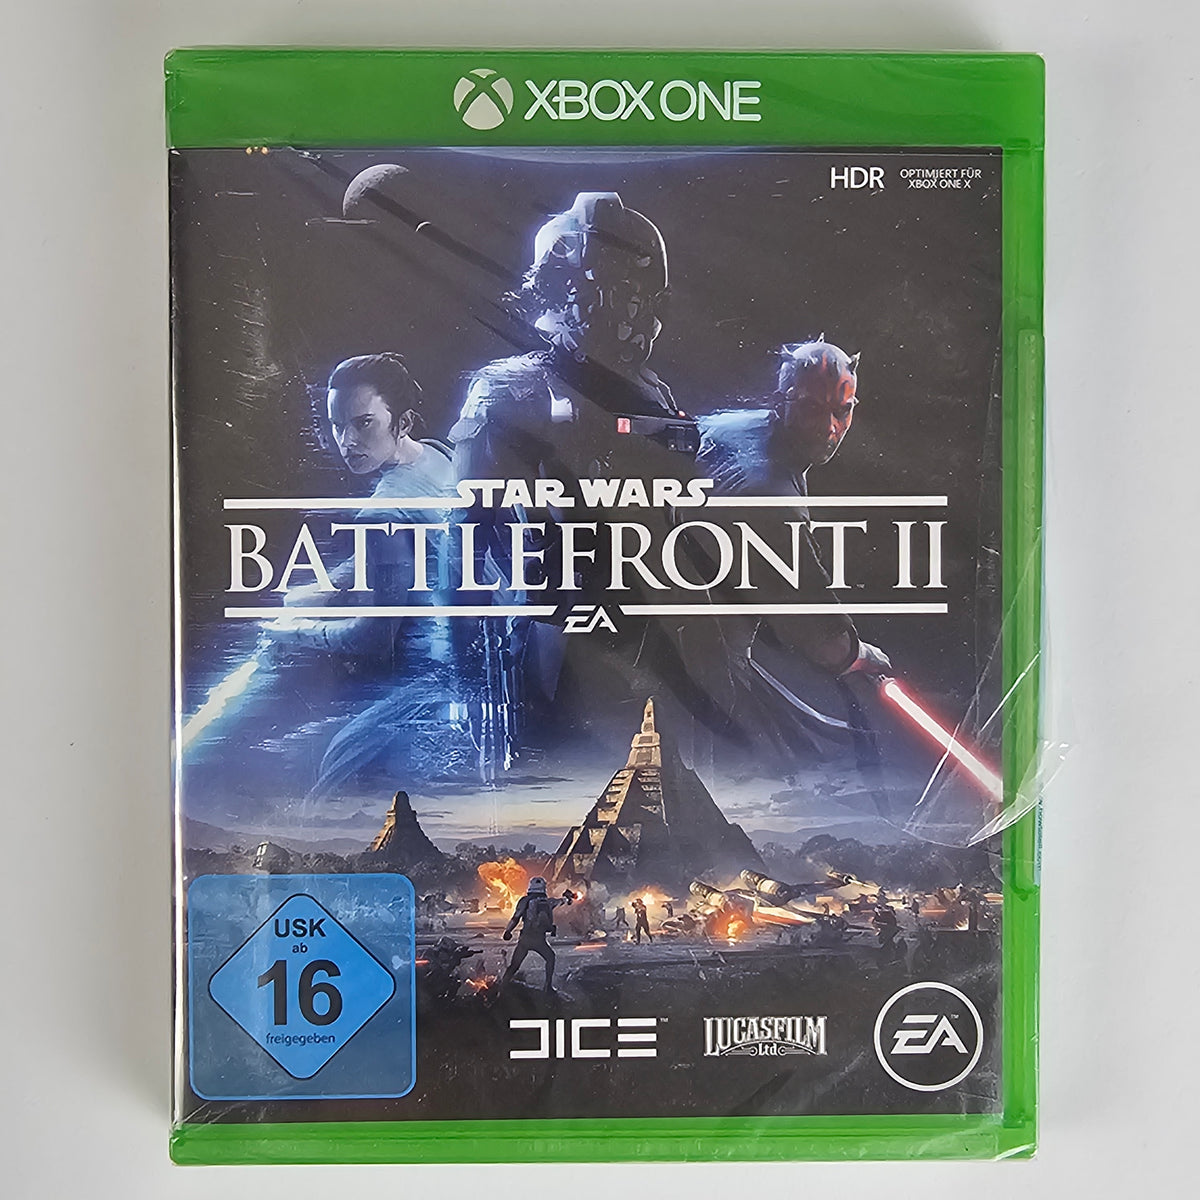 Star Wars Battlefront II [XBOXO]